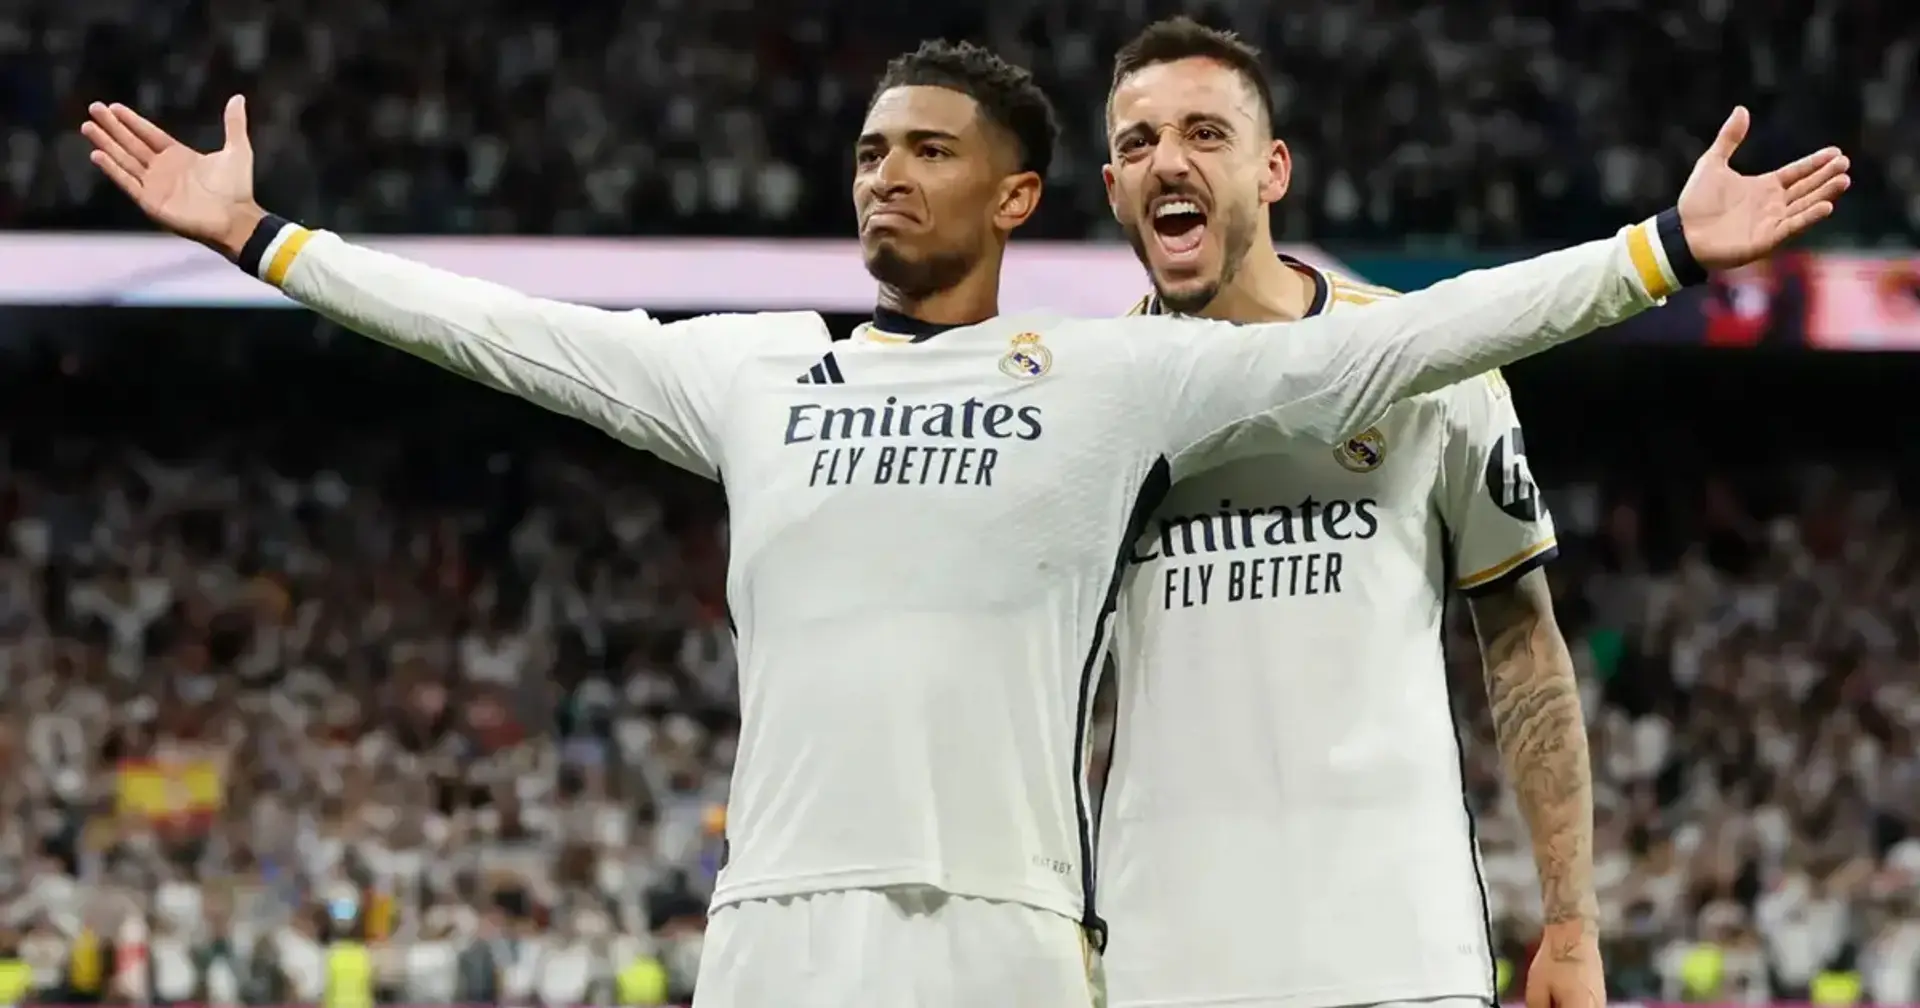 Video: Crónica y reacciones al triunfo del Real Madrid en el Clásico